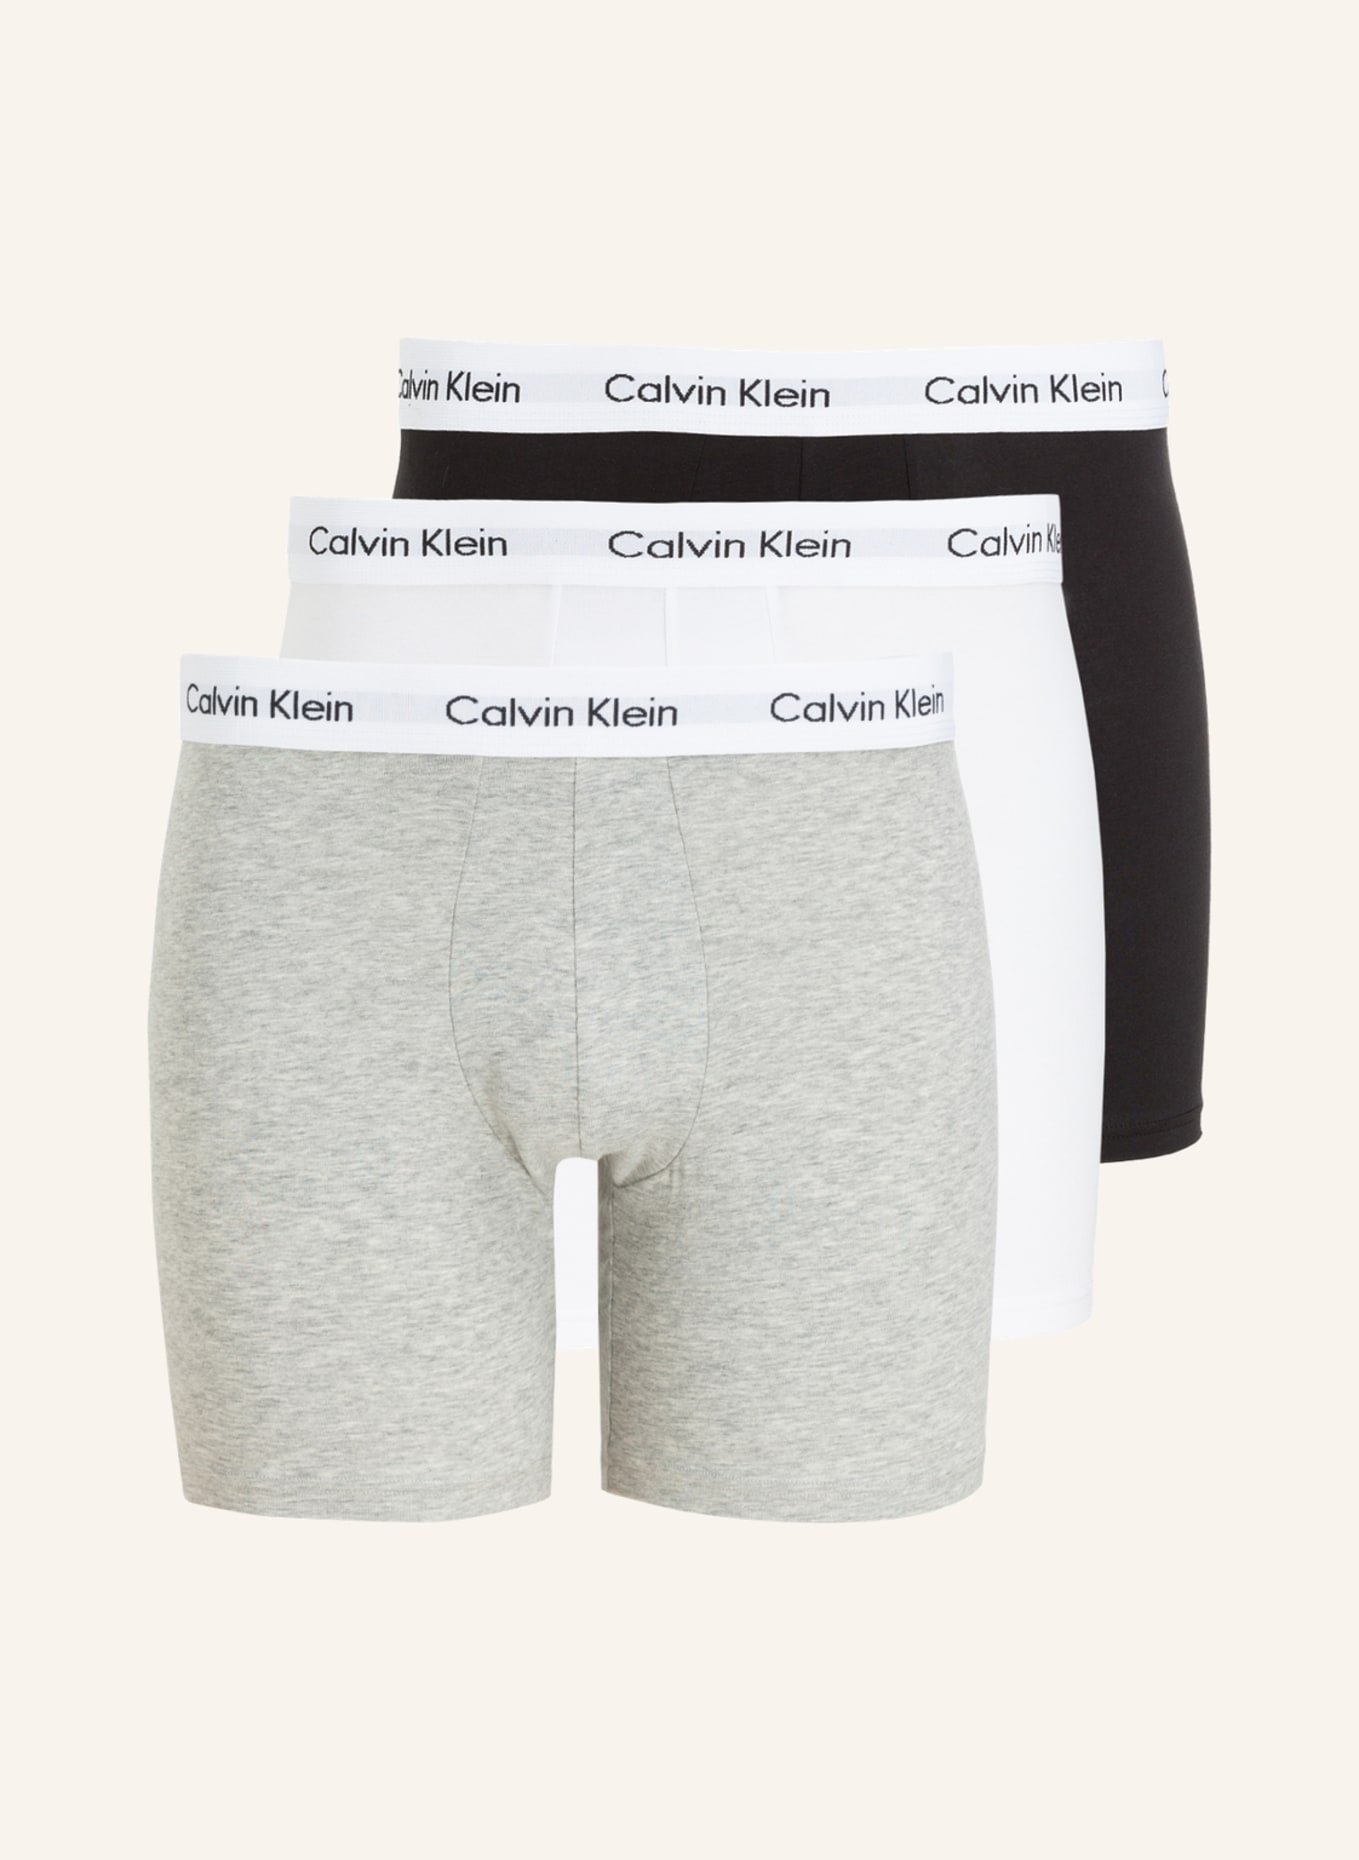 Calvin Klein 3er-Pack Boxershorts COTTON STRETCH, Farbe: SCHWARZ/ WEISS/ GRAU MELIERT (Bild 1)